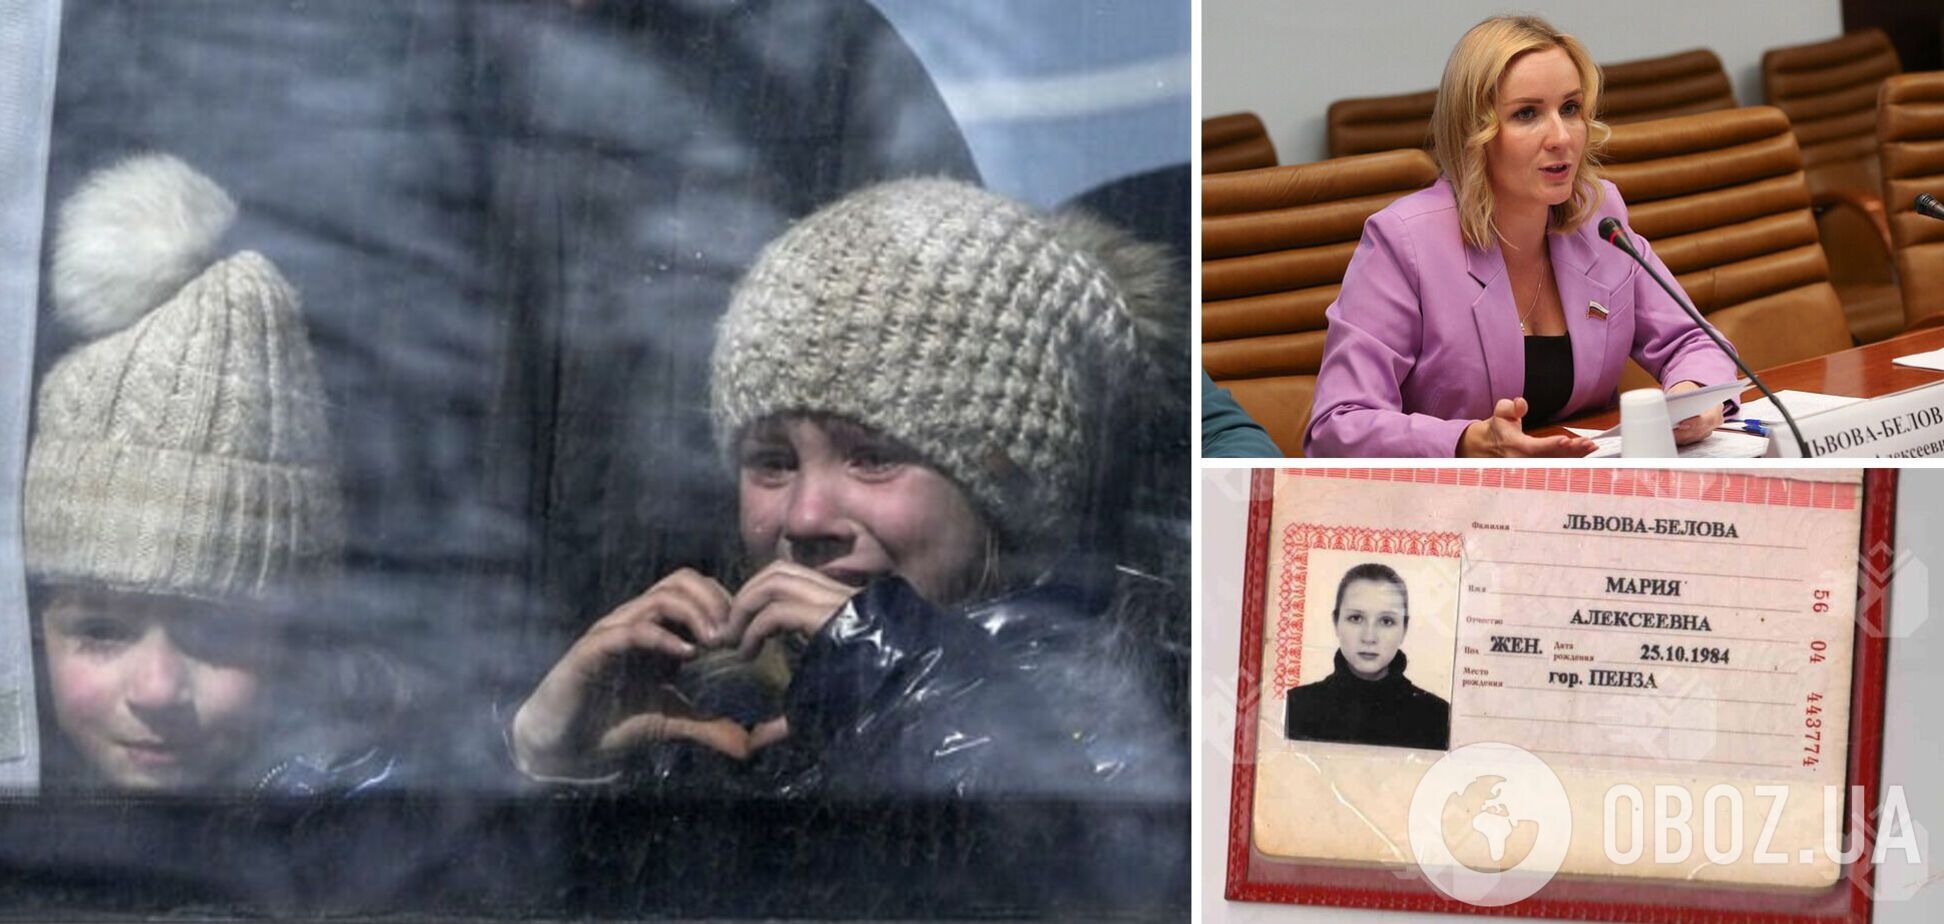 'Це будуть діти Росії': український хлопчик розповів, як у РФ їм 'промивали мізки' і розповідали про усиновлення. Відео 